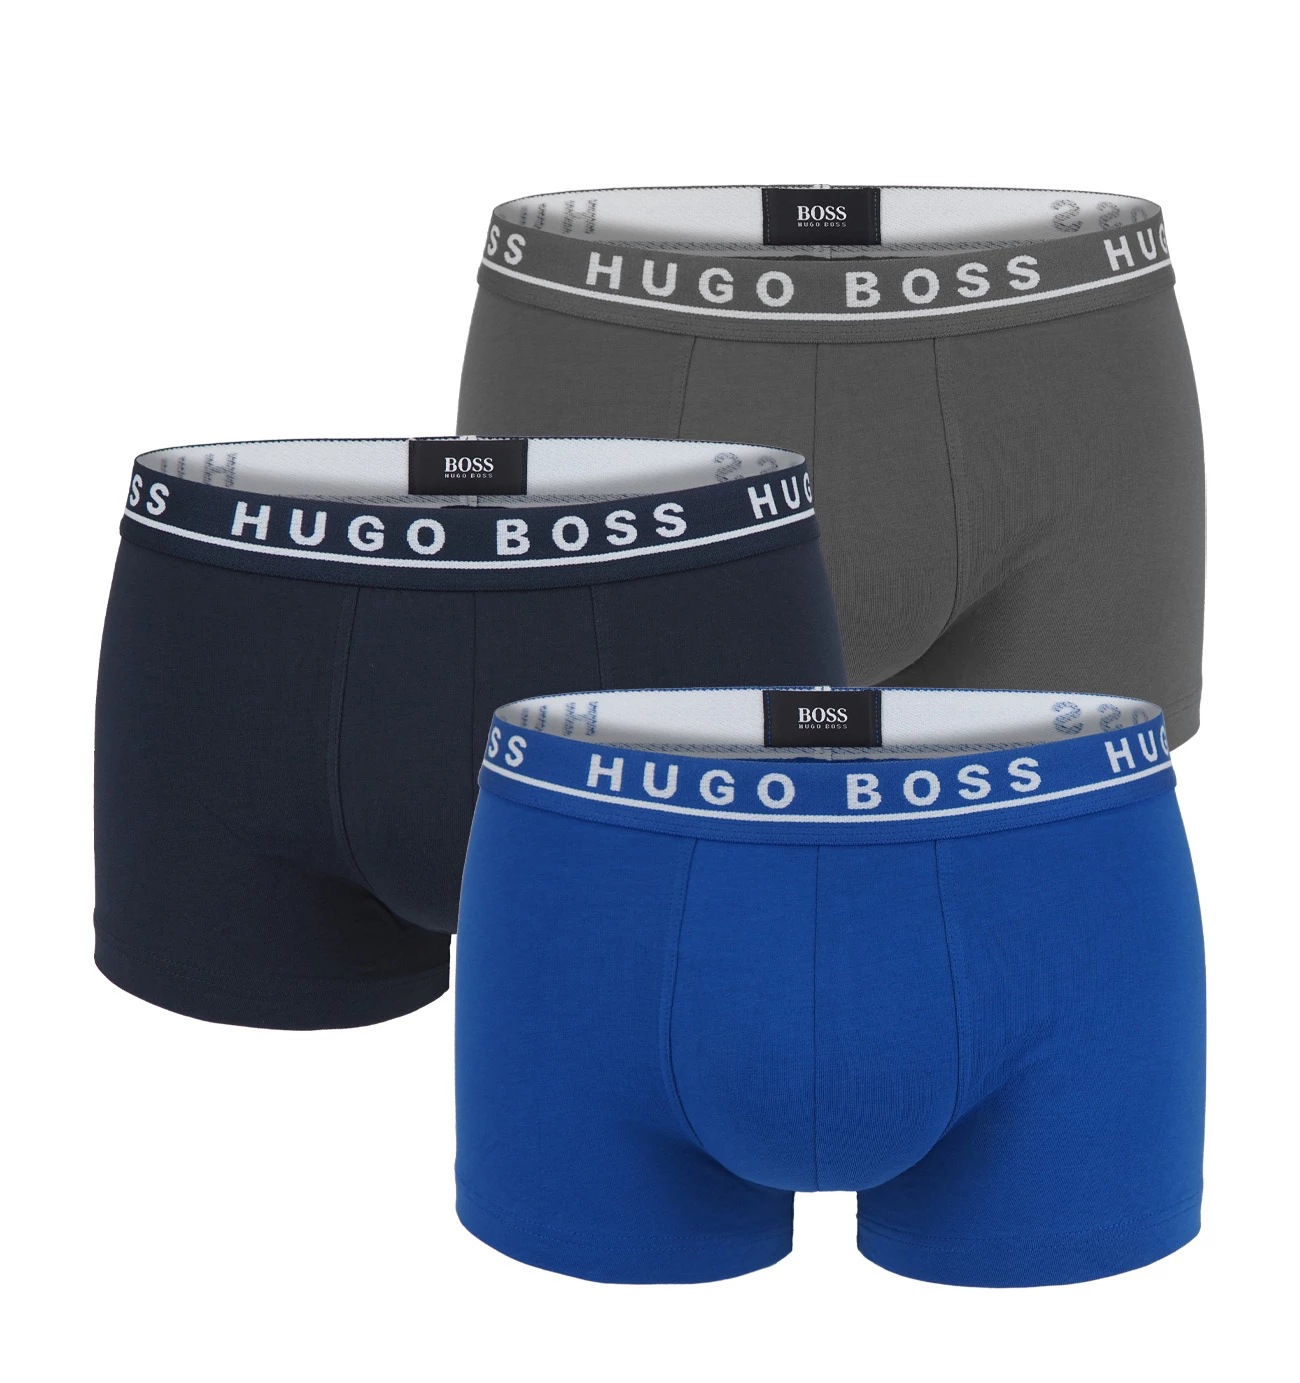 BOSS - 3PACK boxerky gray & blue combo (HUGO BOSS)